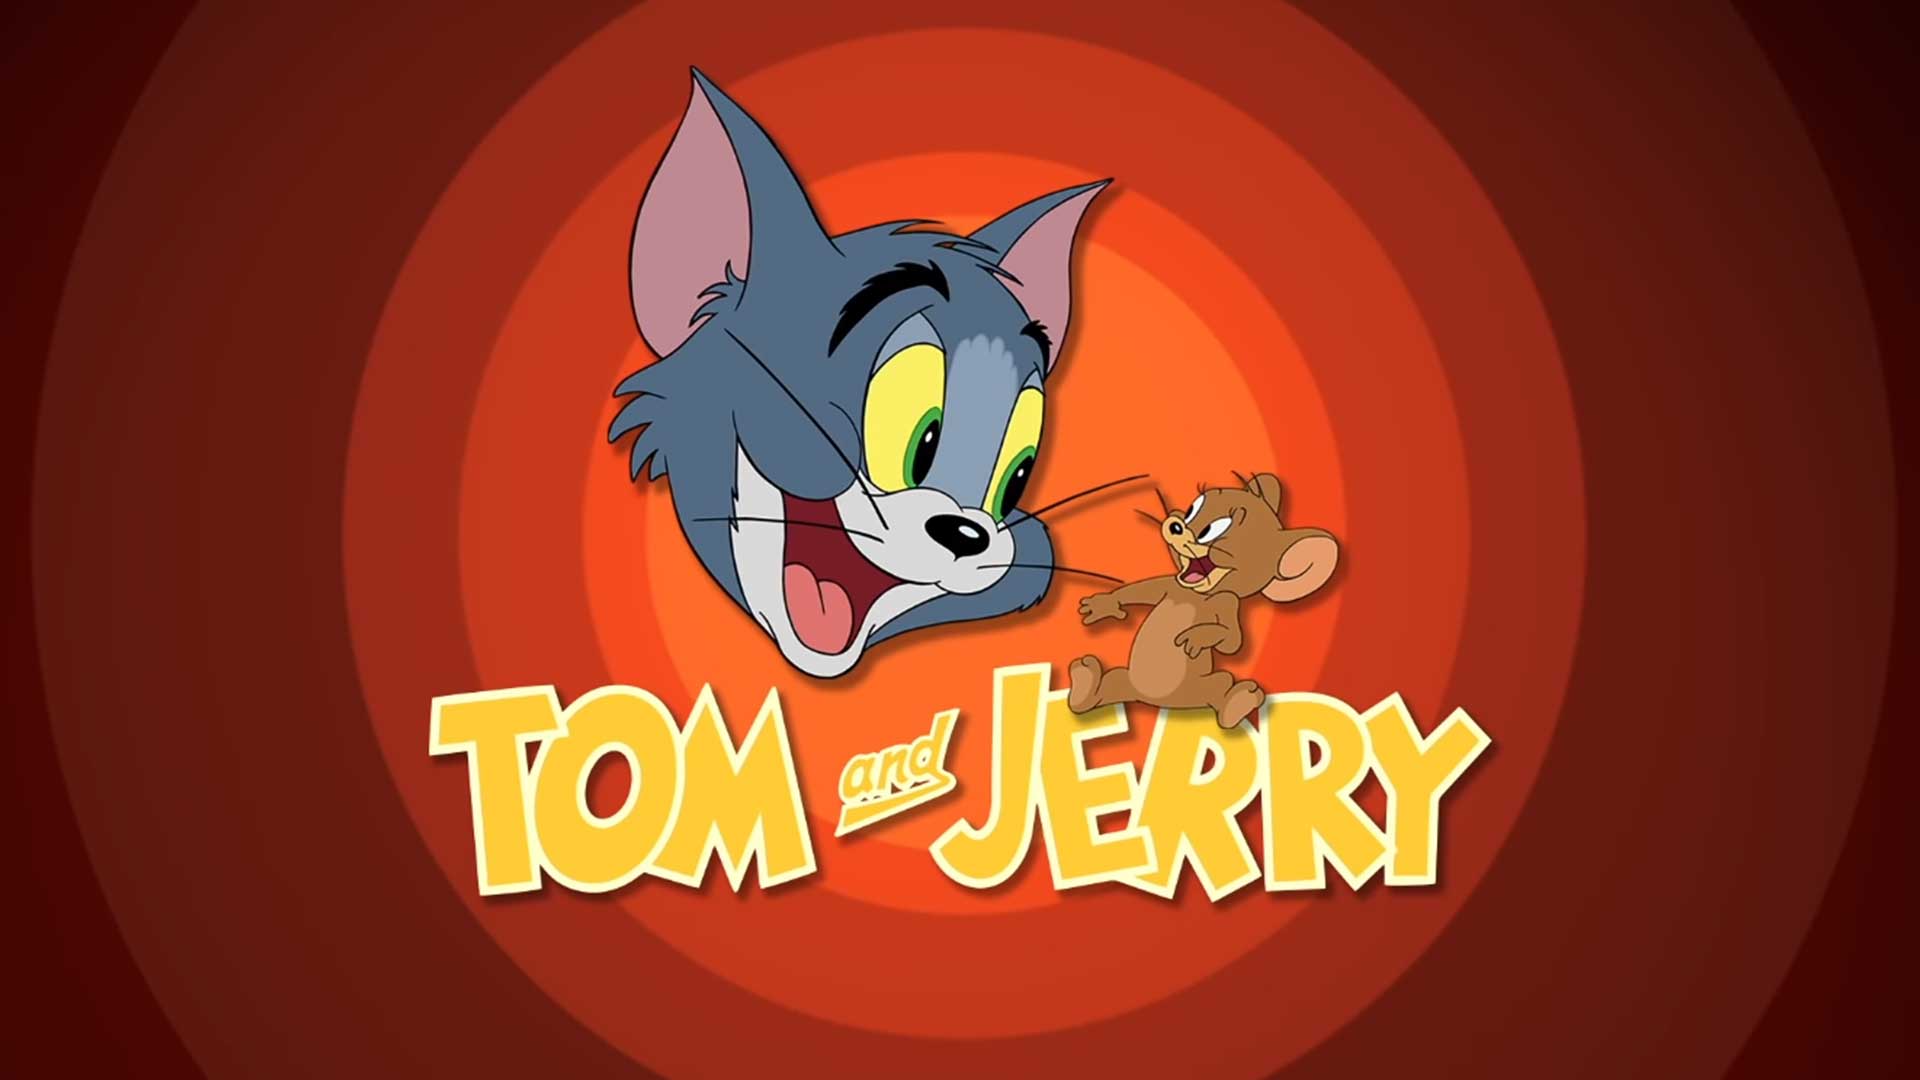 Том и Джерри – 51 серия «Безумная спешка» / Tom and Jerry